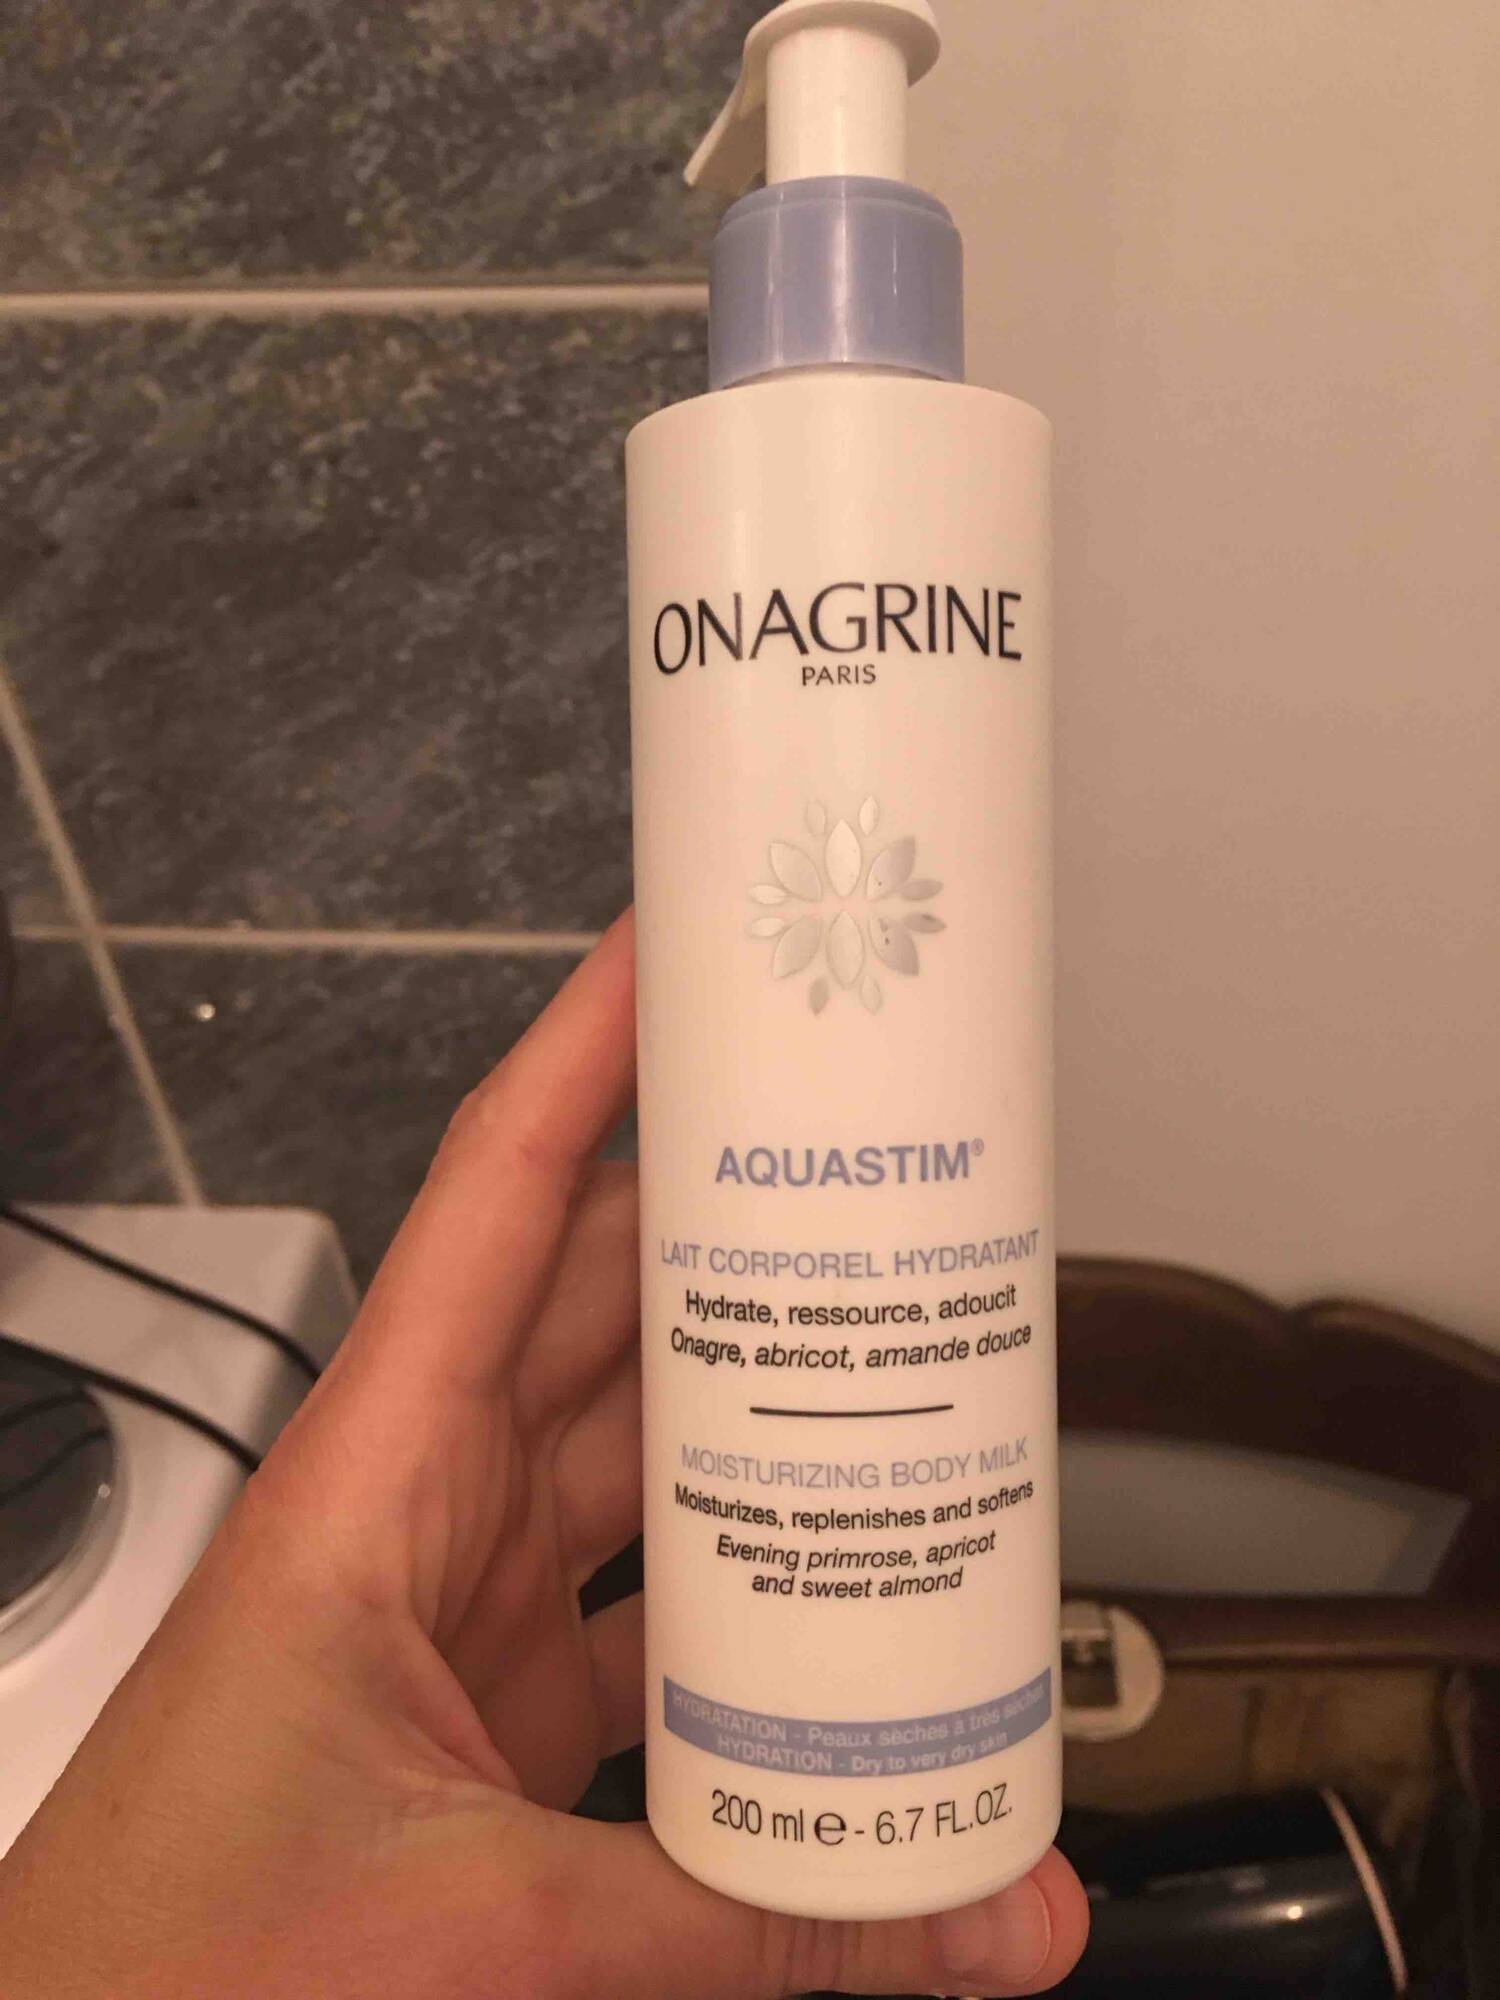 ONAGRINE - Aquastim - Lait corporel hydratant